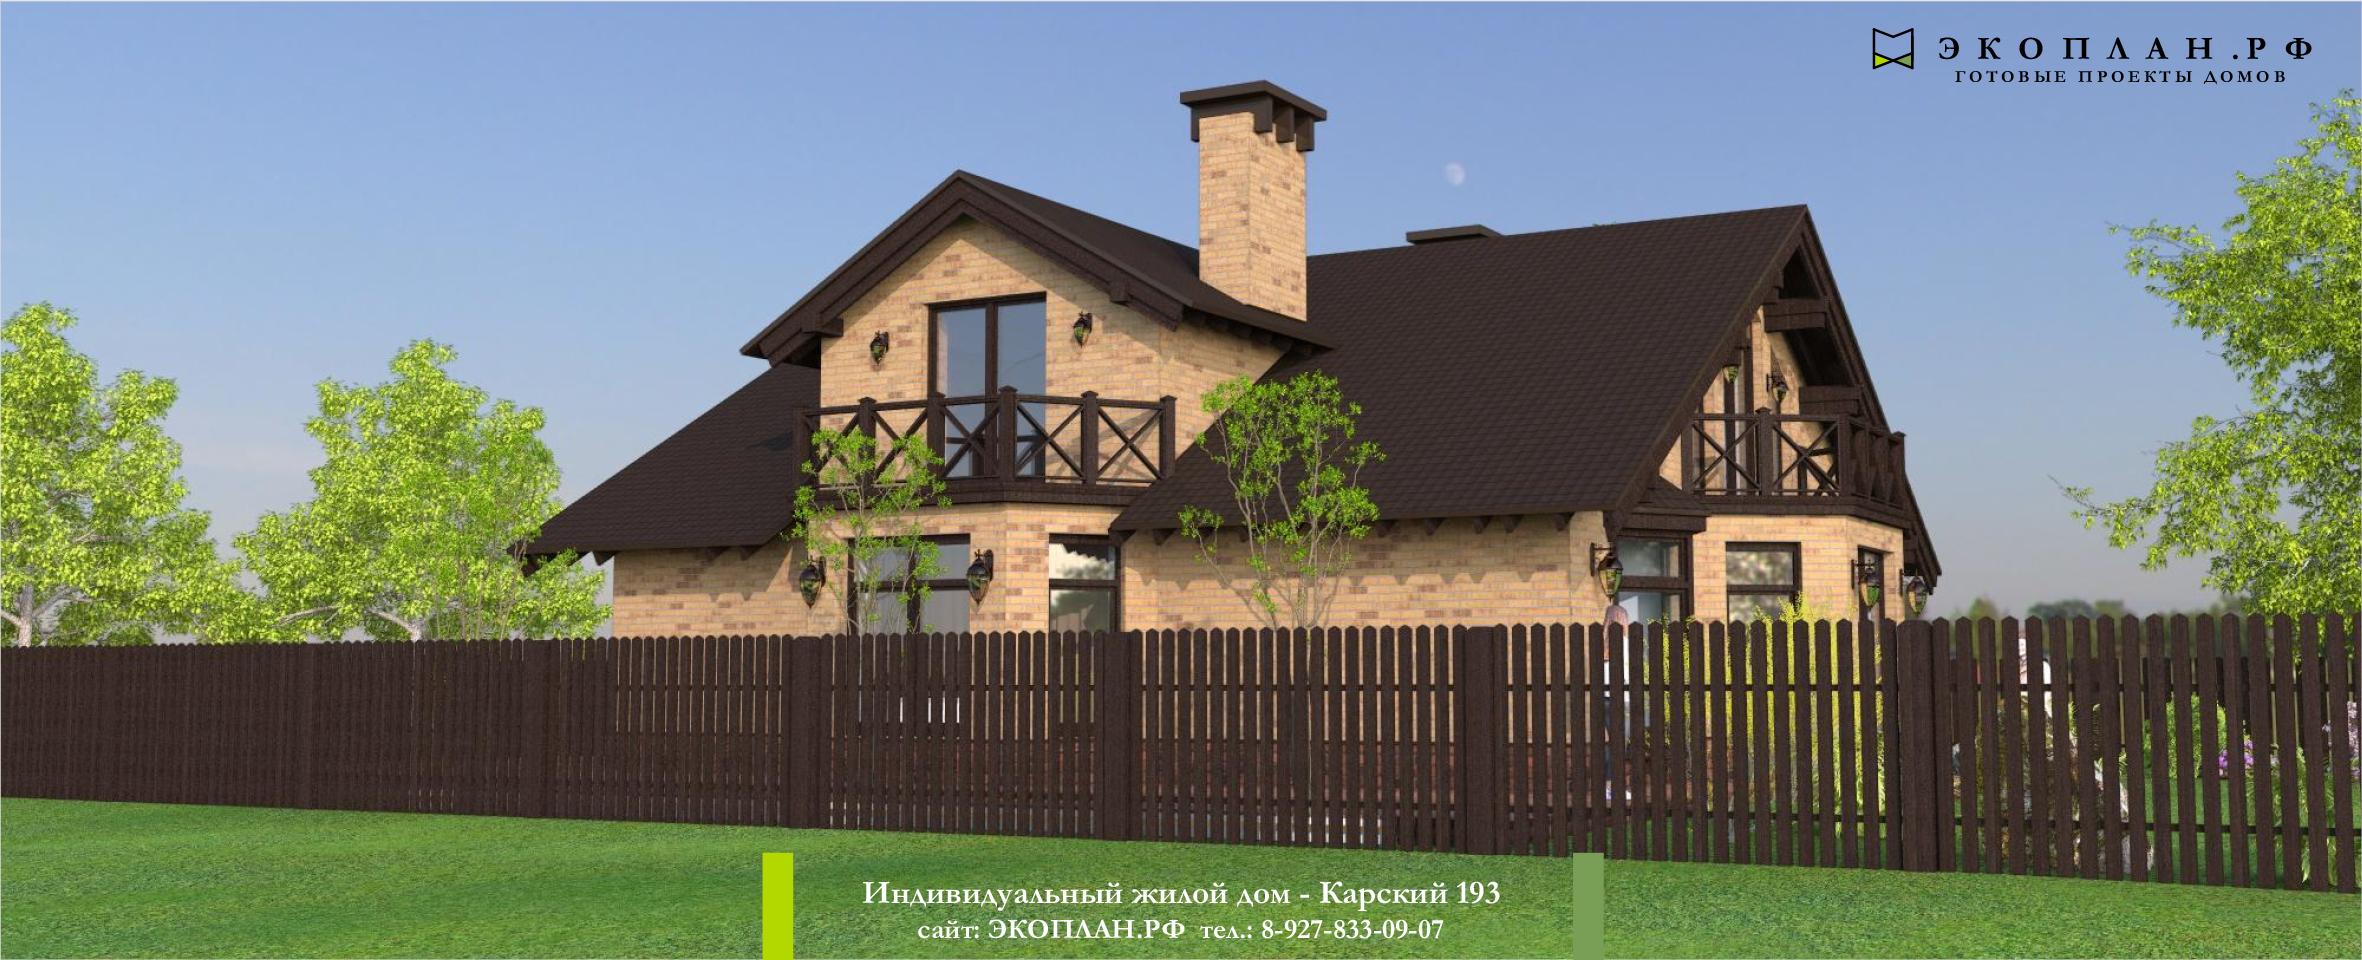 Карский 193 - Готовый проект дома - Экоплан.рф фасад